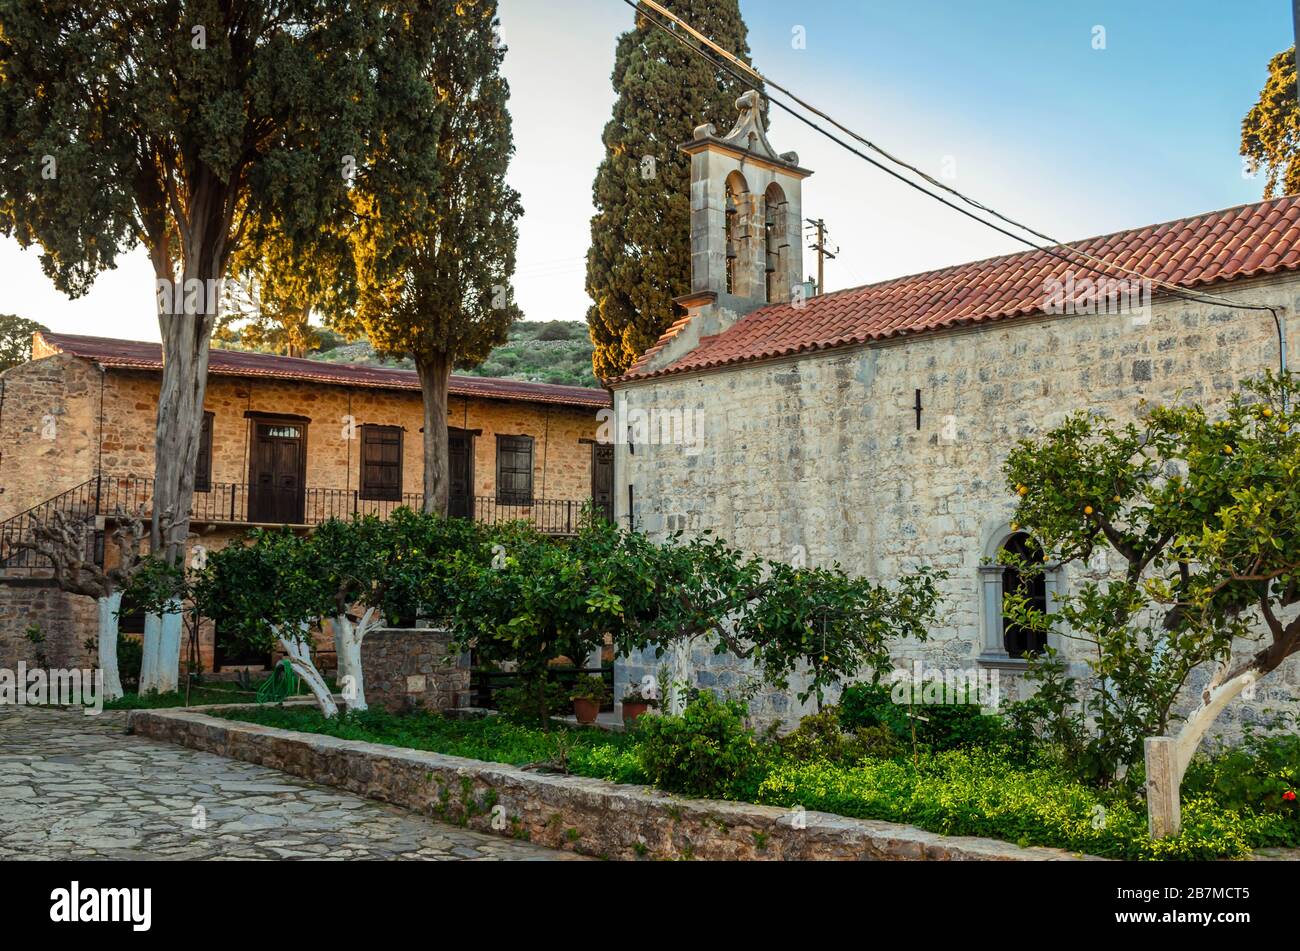 Il monastero di Areti è uno dei bellissimi monasteri cretesi. Si trova vicino al villaggio di Karydi in una zona isolata della provincia di Mirabello. Foto Stock